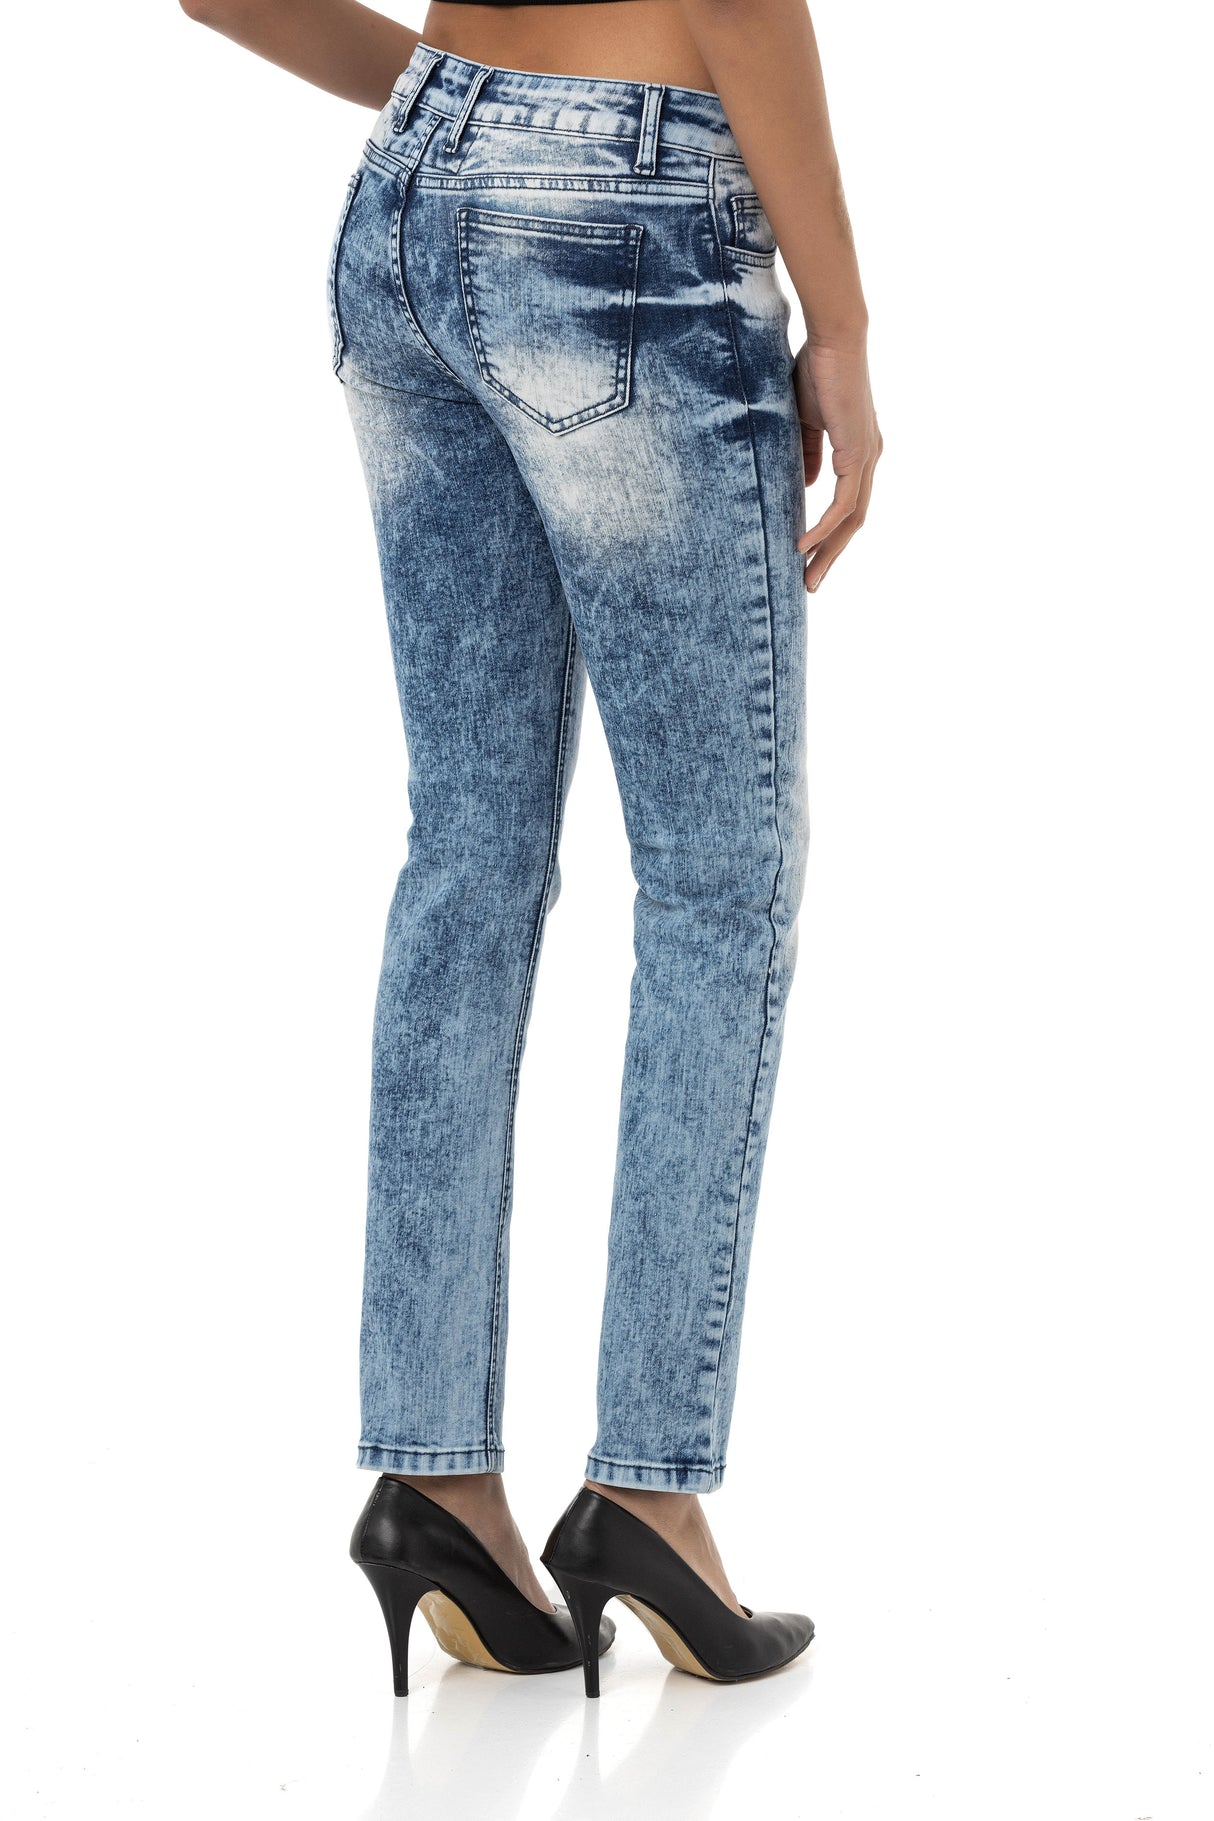 WD459 Mujeres Jeans de ajuste delgado en un aspecto moderno